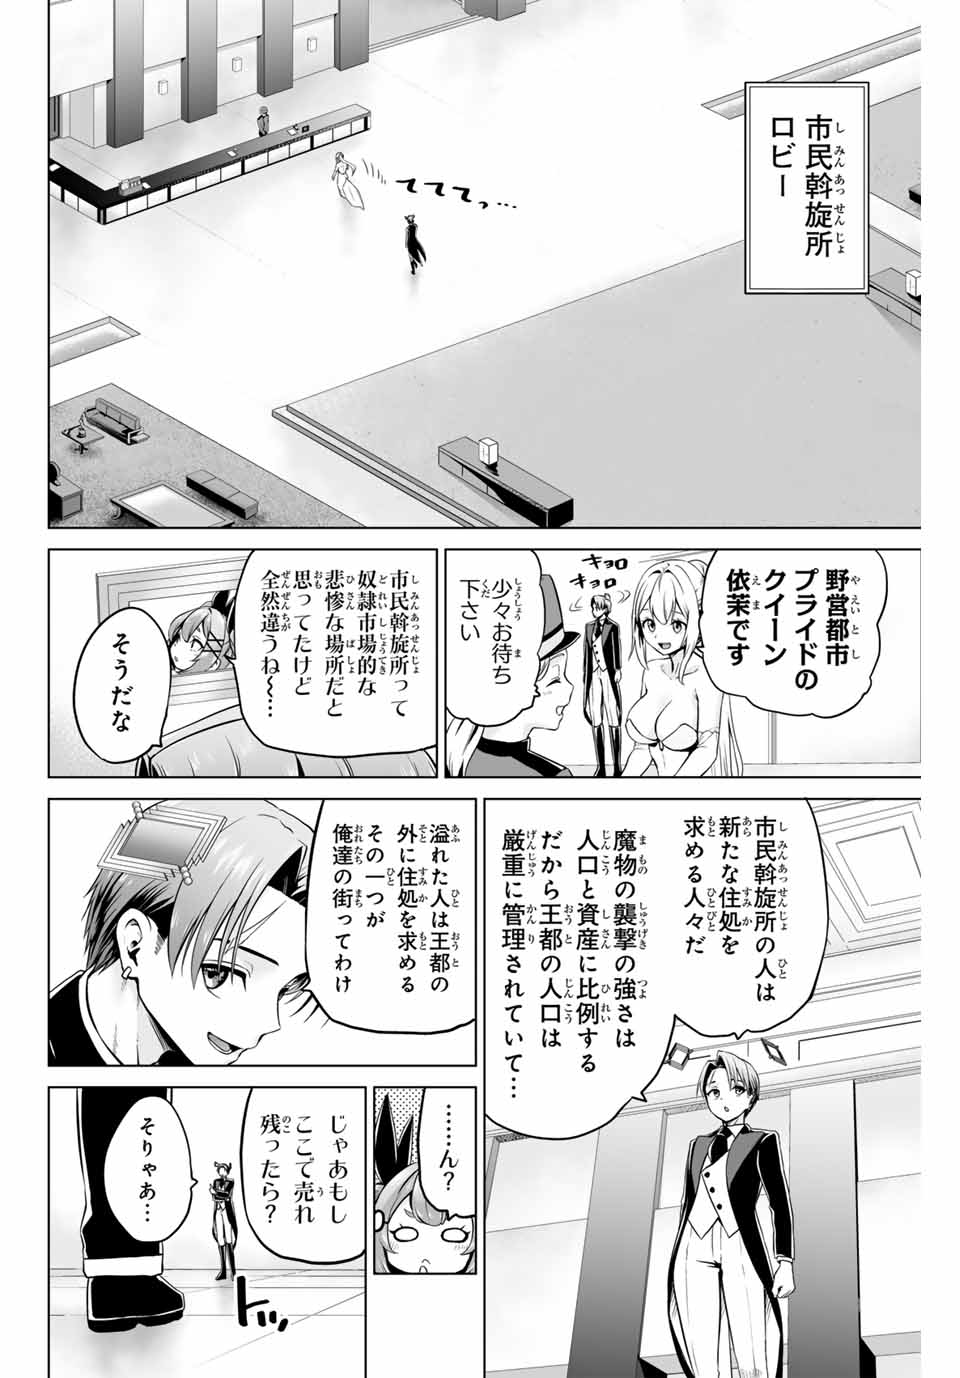 Gunshin No Takuto - Chapter 20 - Page 6